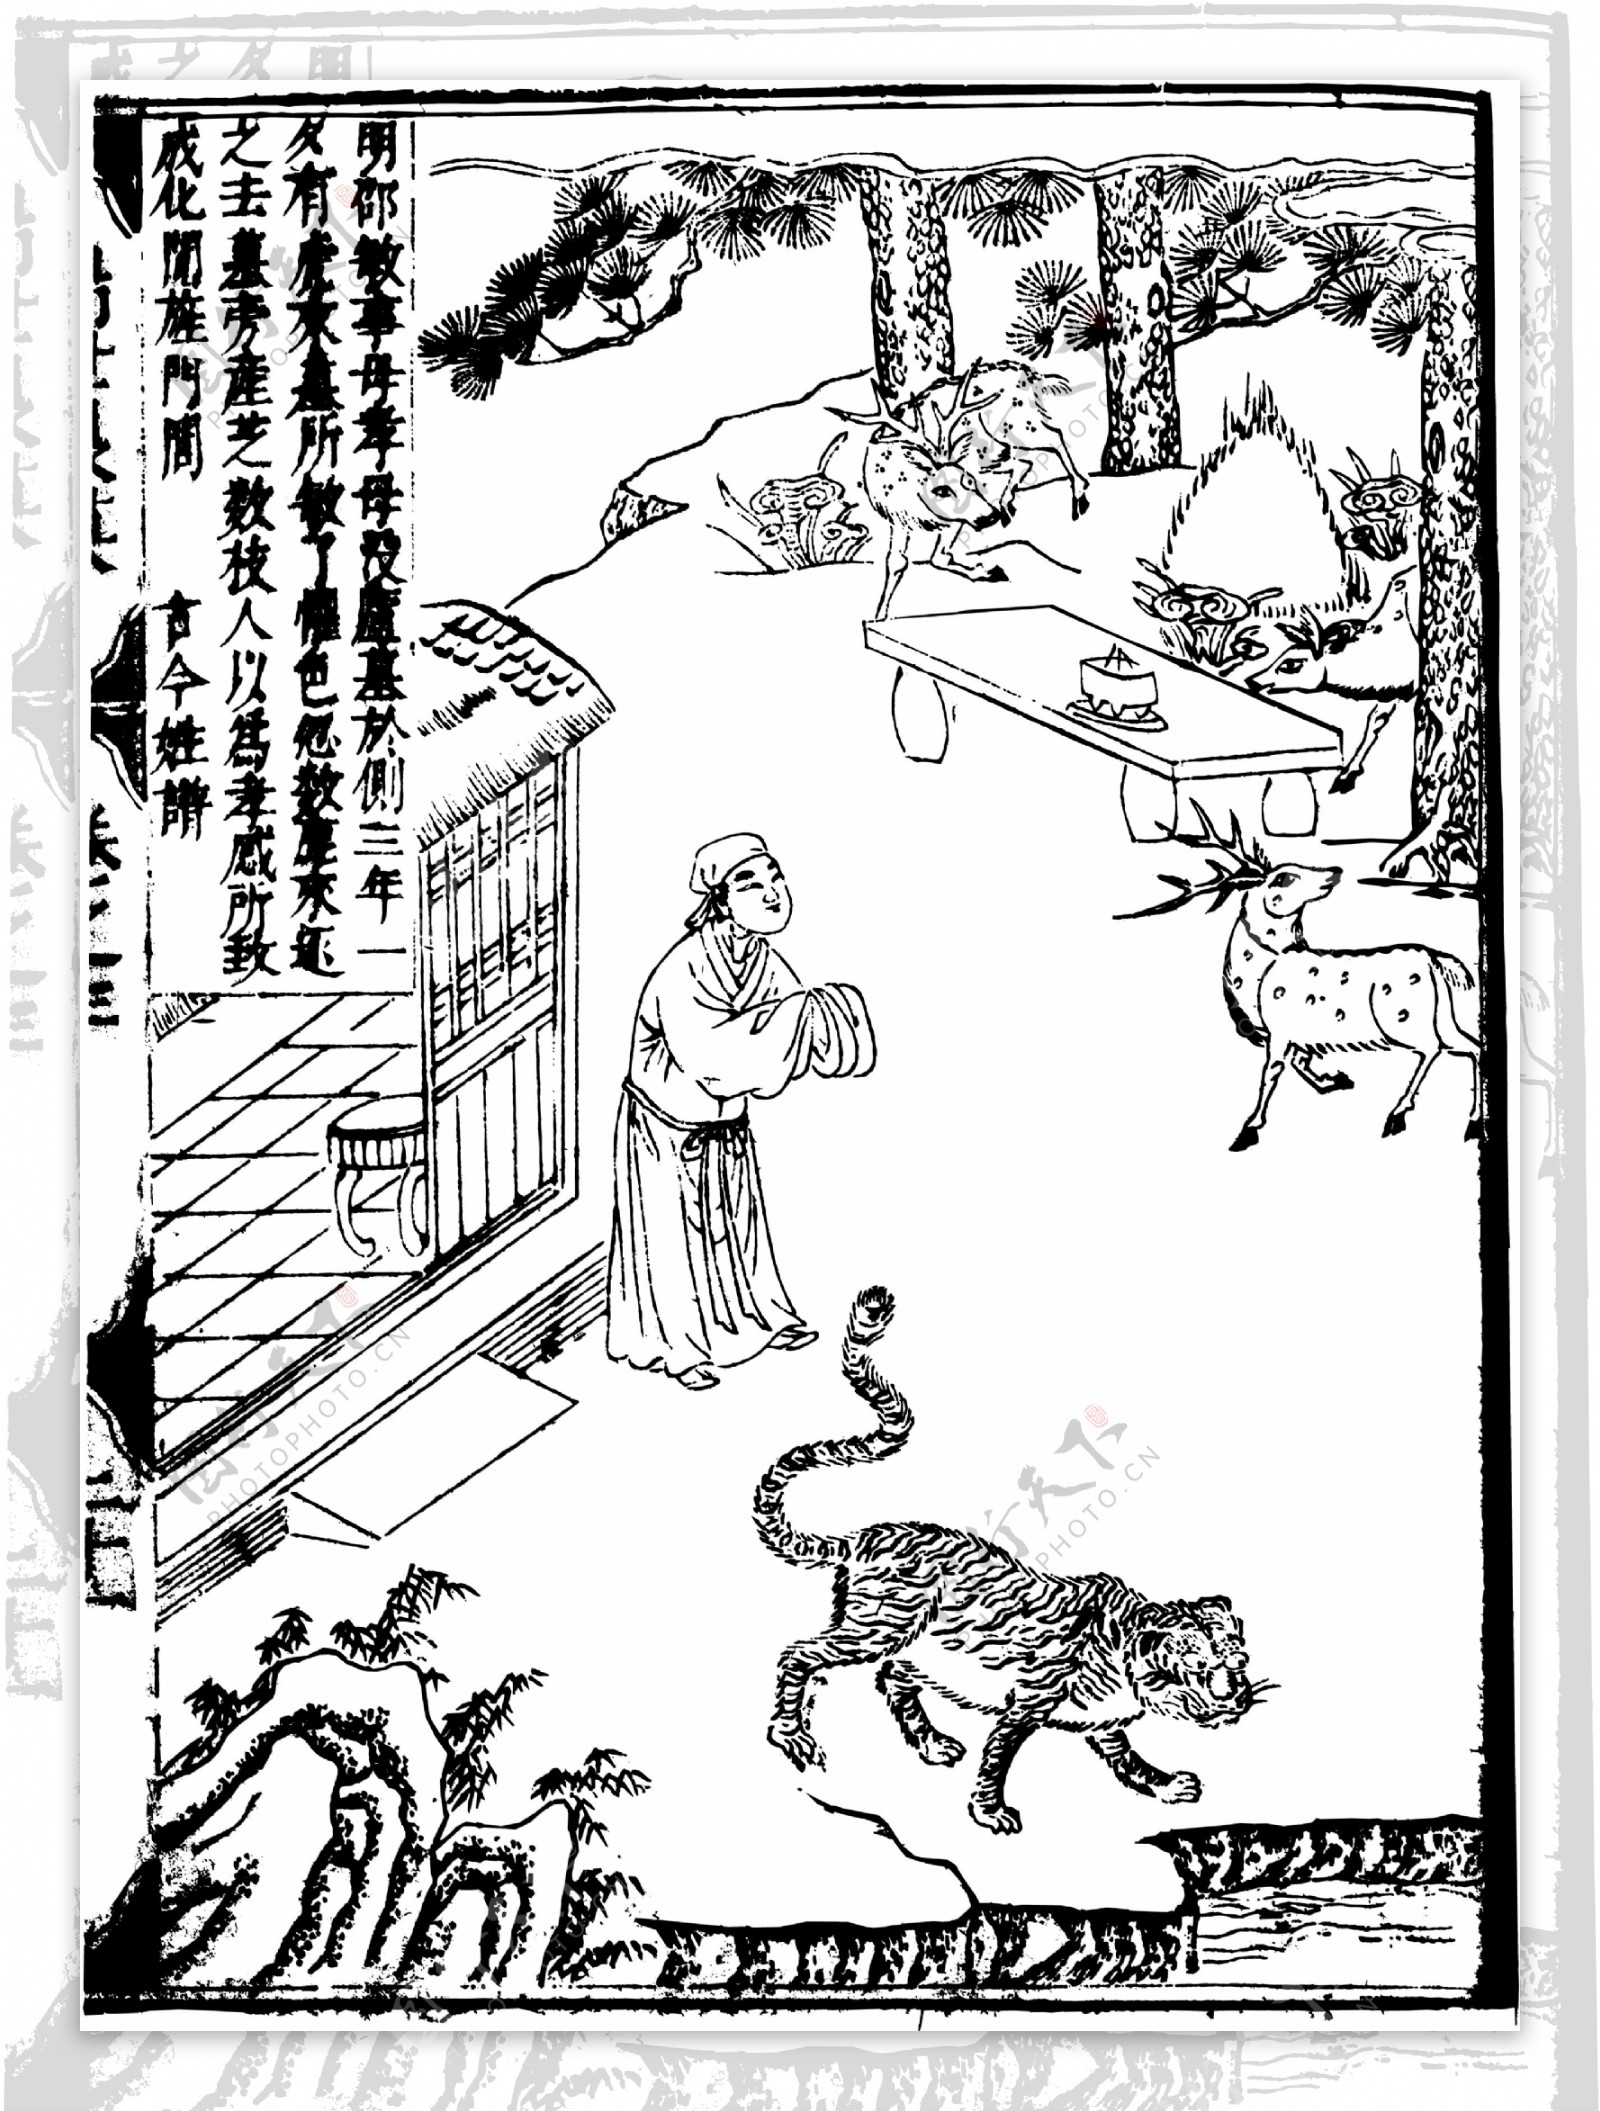 瑞世良英木刻版画中国传统文化60